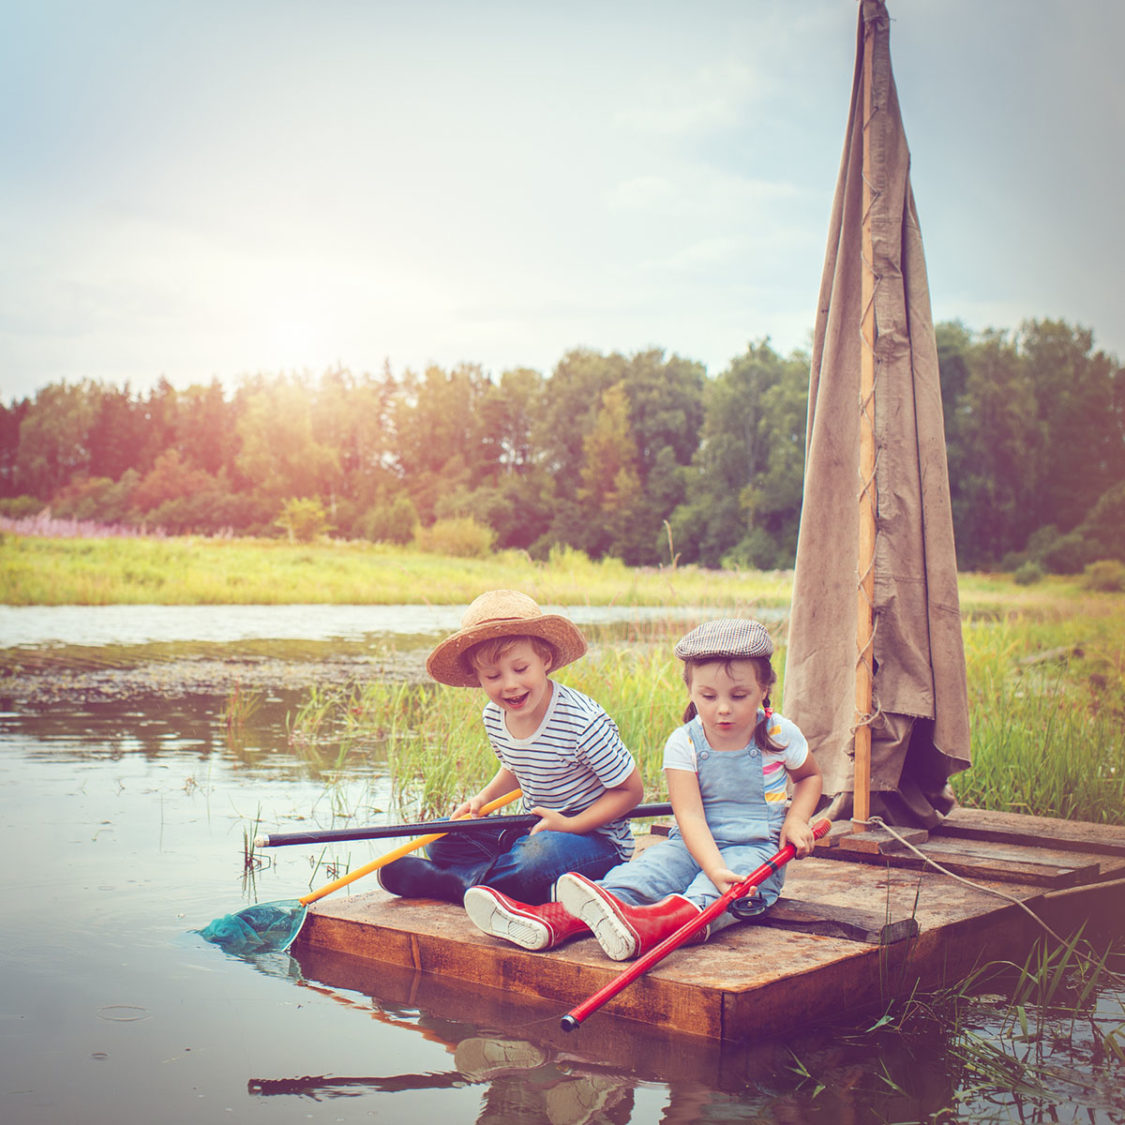 Deux enfants jouent à pêcher sur un radeau sur l'eau